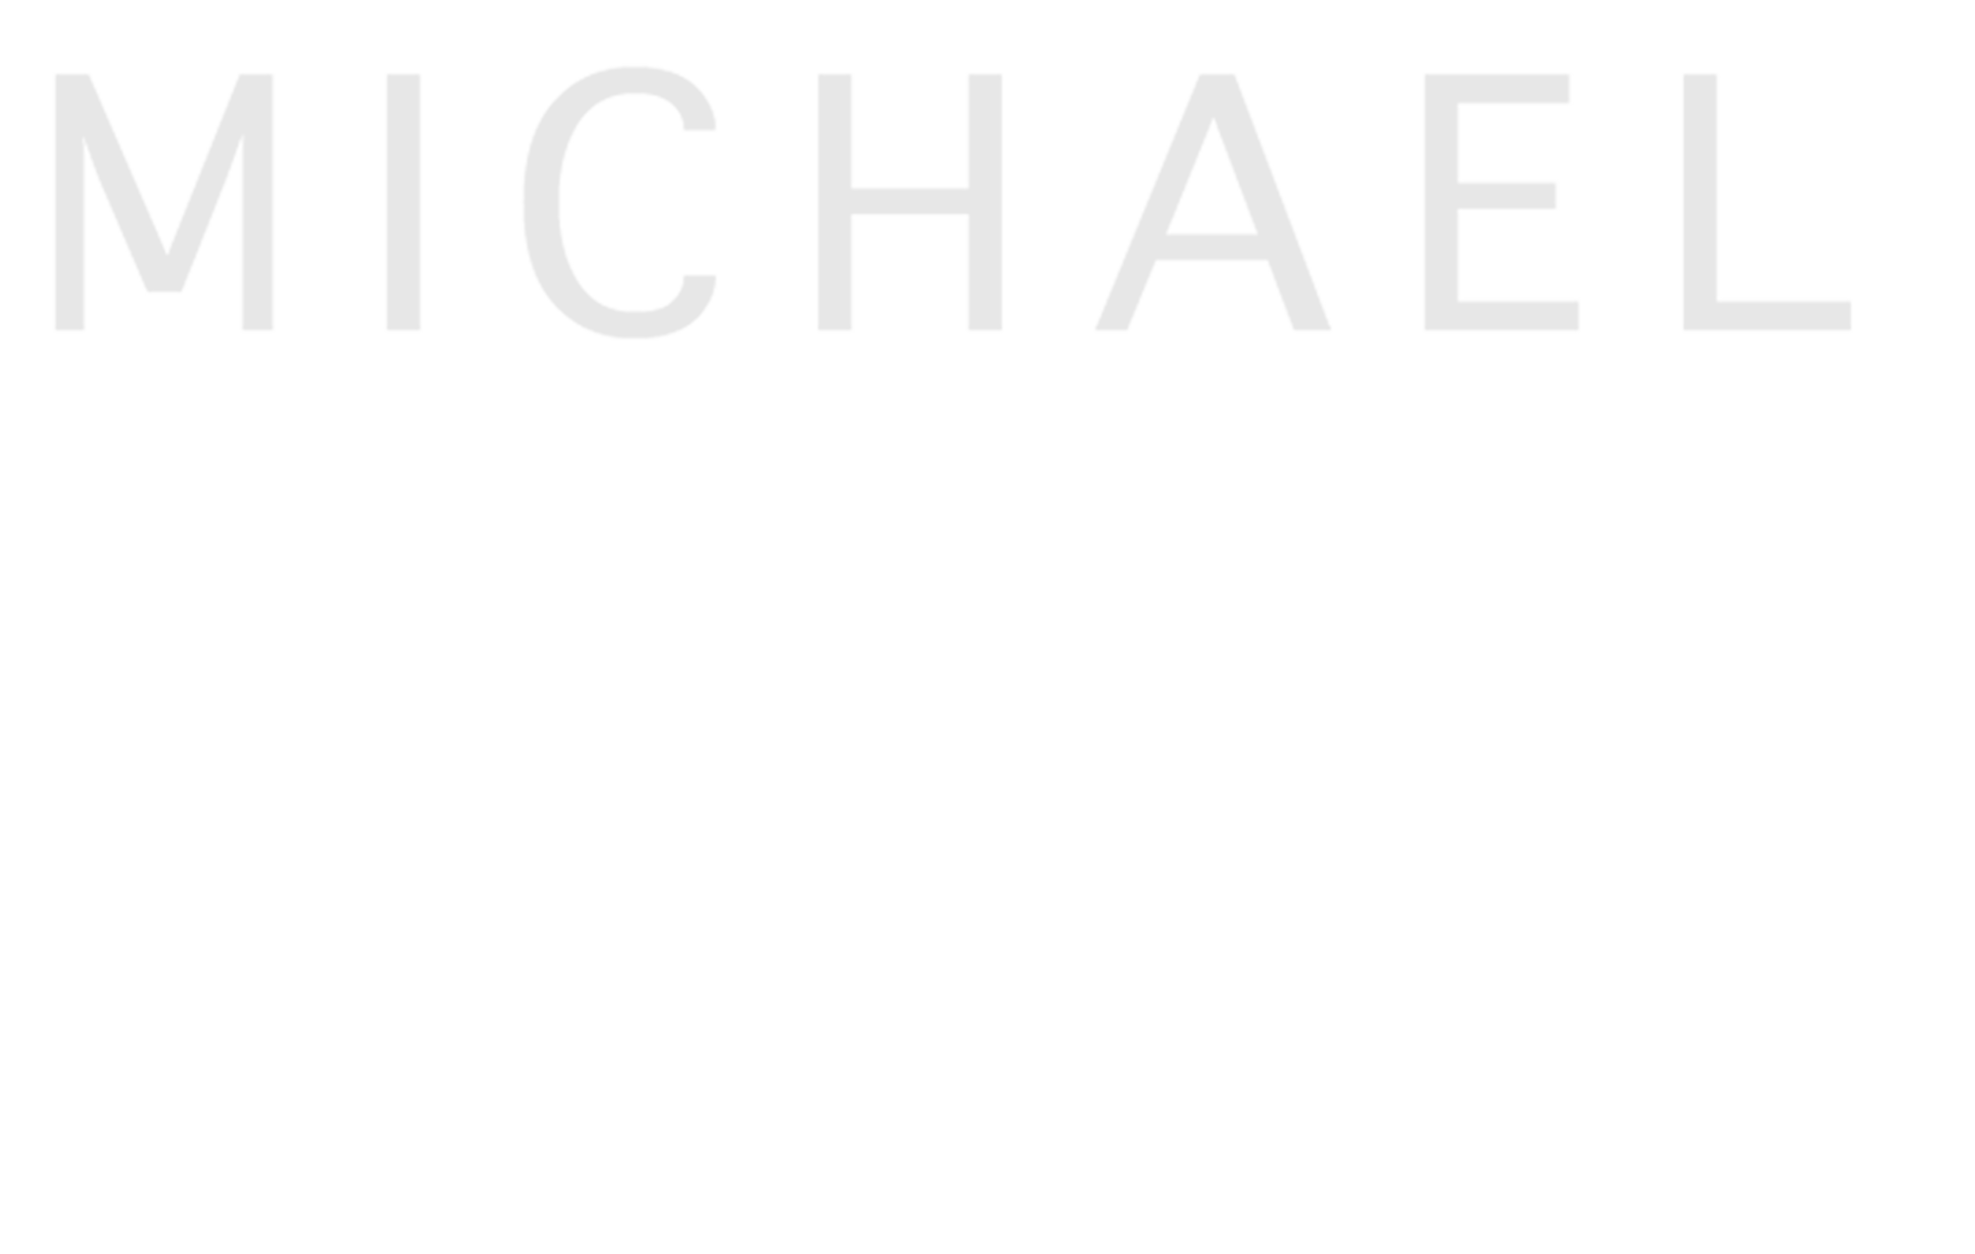 Michael Lucerne - Der Kunstrocker